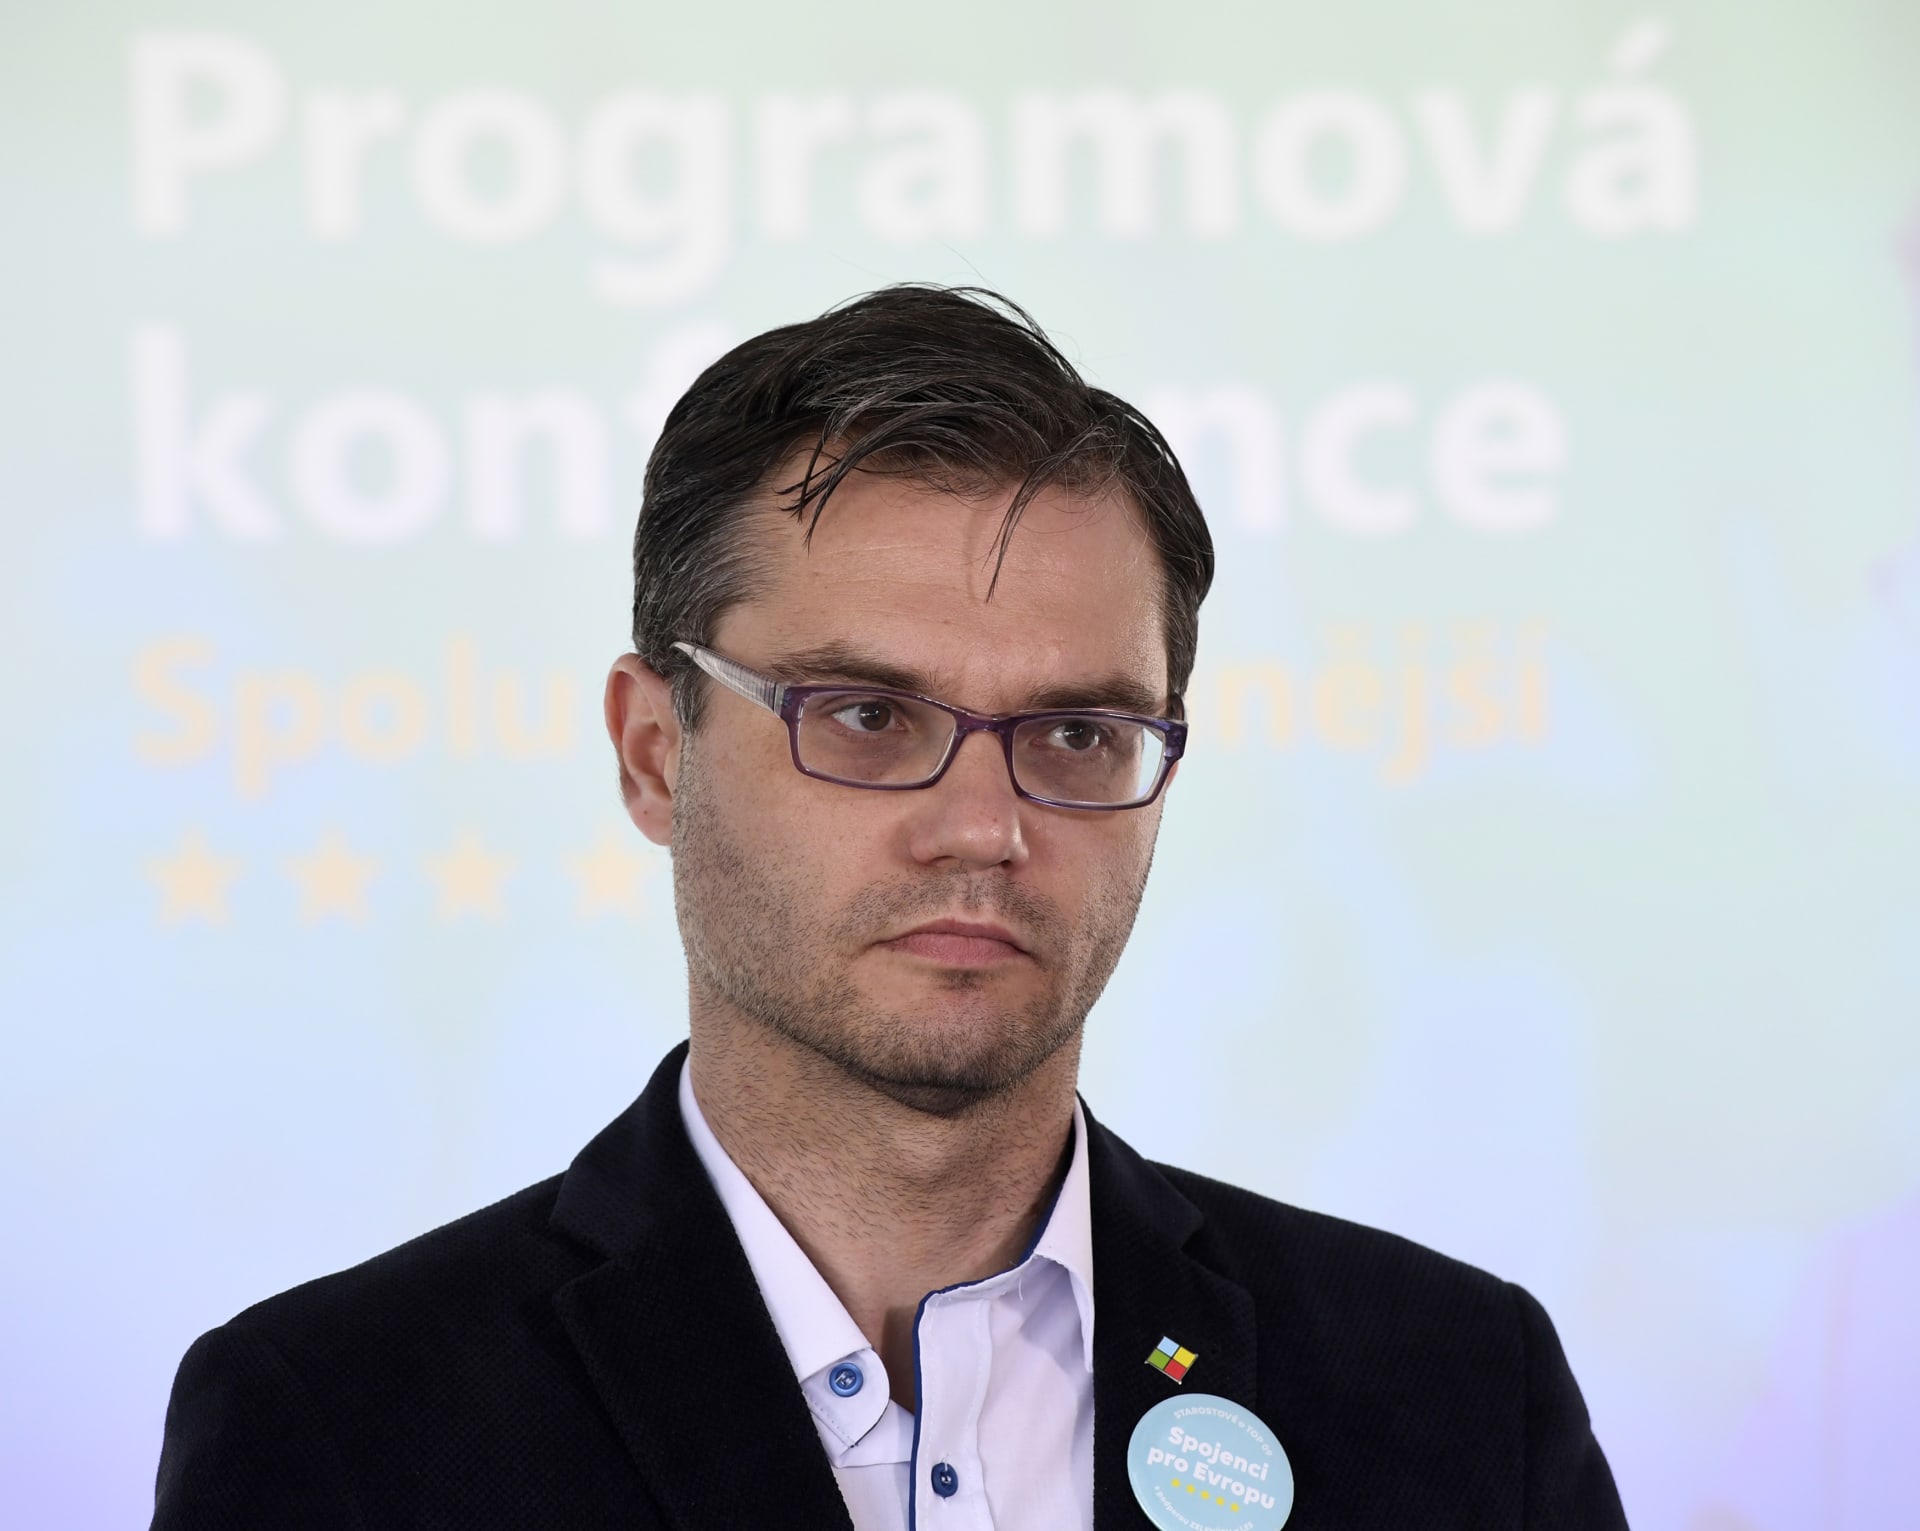 Europoslanec a bývalý místopředseda STAN Stanislav Polčák je dlouholetým blízkým přítelem Michala Redla. Polčák kvůli tomu pozastavil své členství v hnutí STAN.